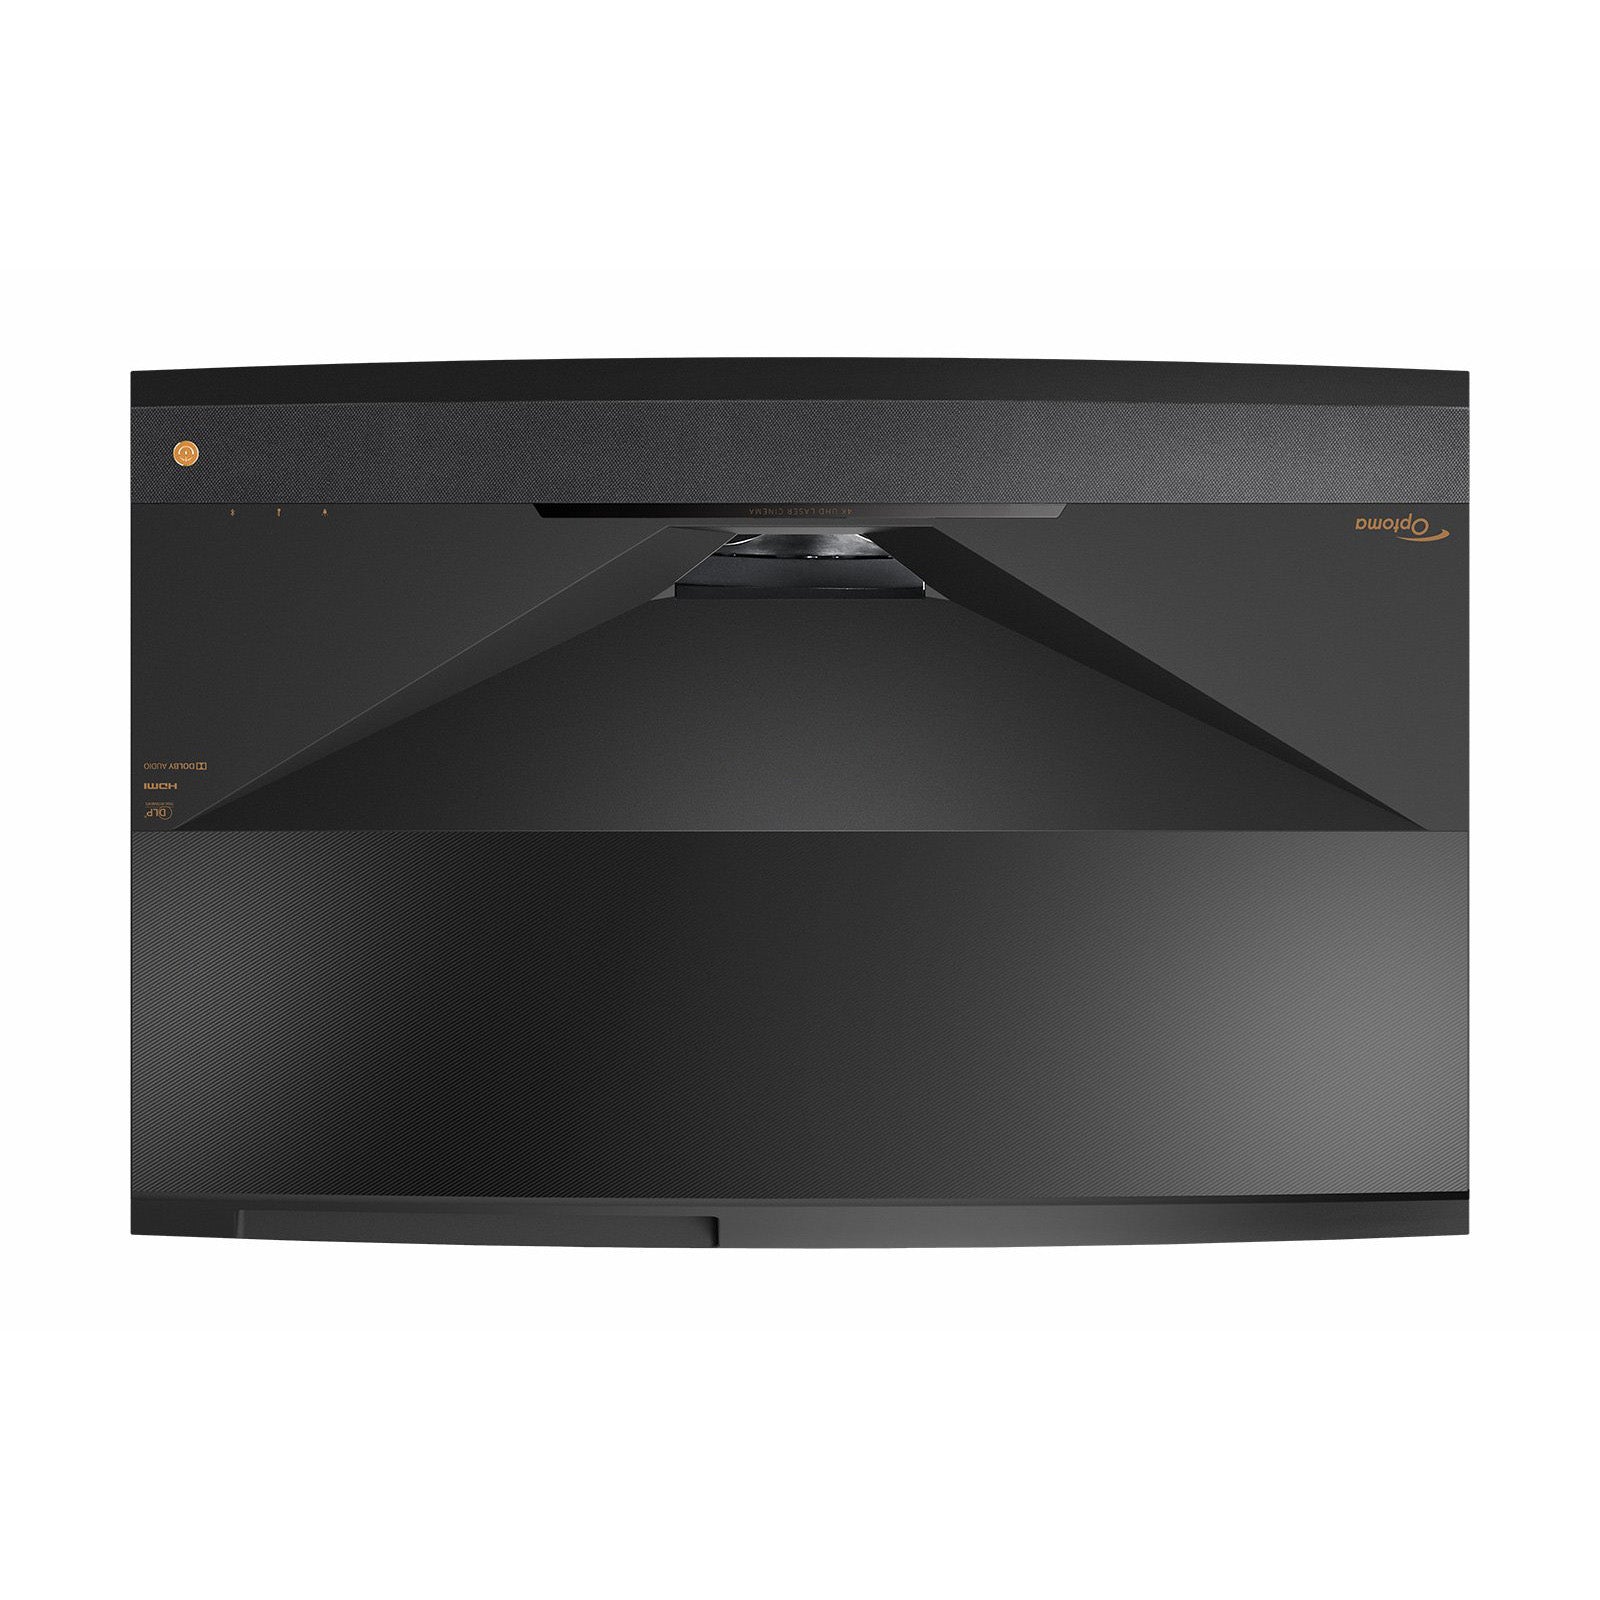 Optoma Cinema X Pro 4K LaserTV Projection TV 